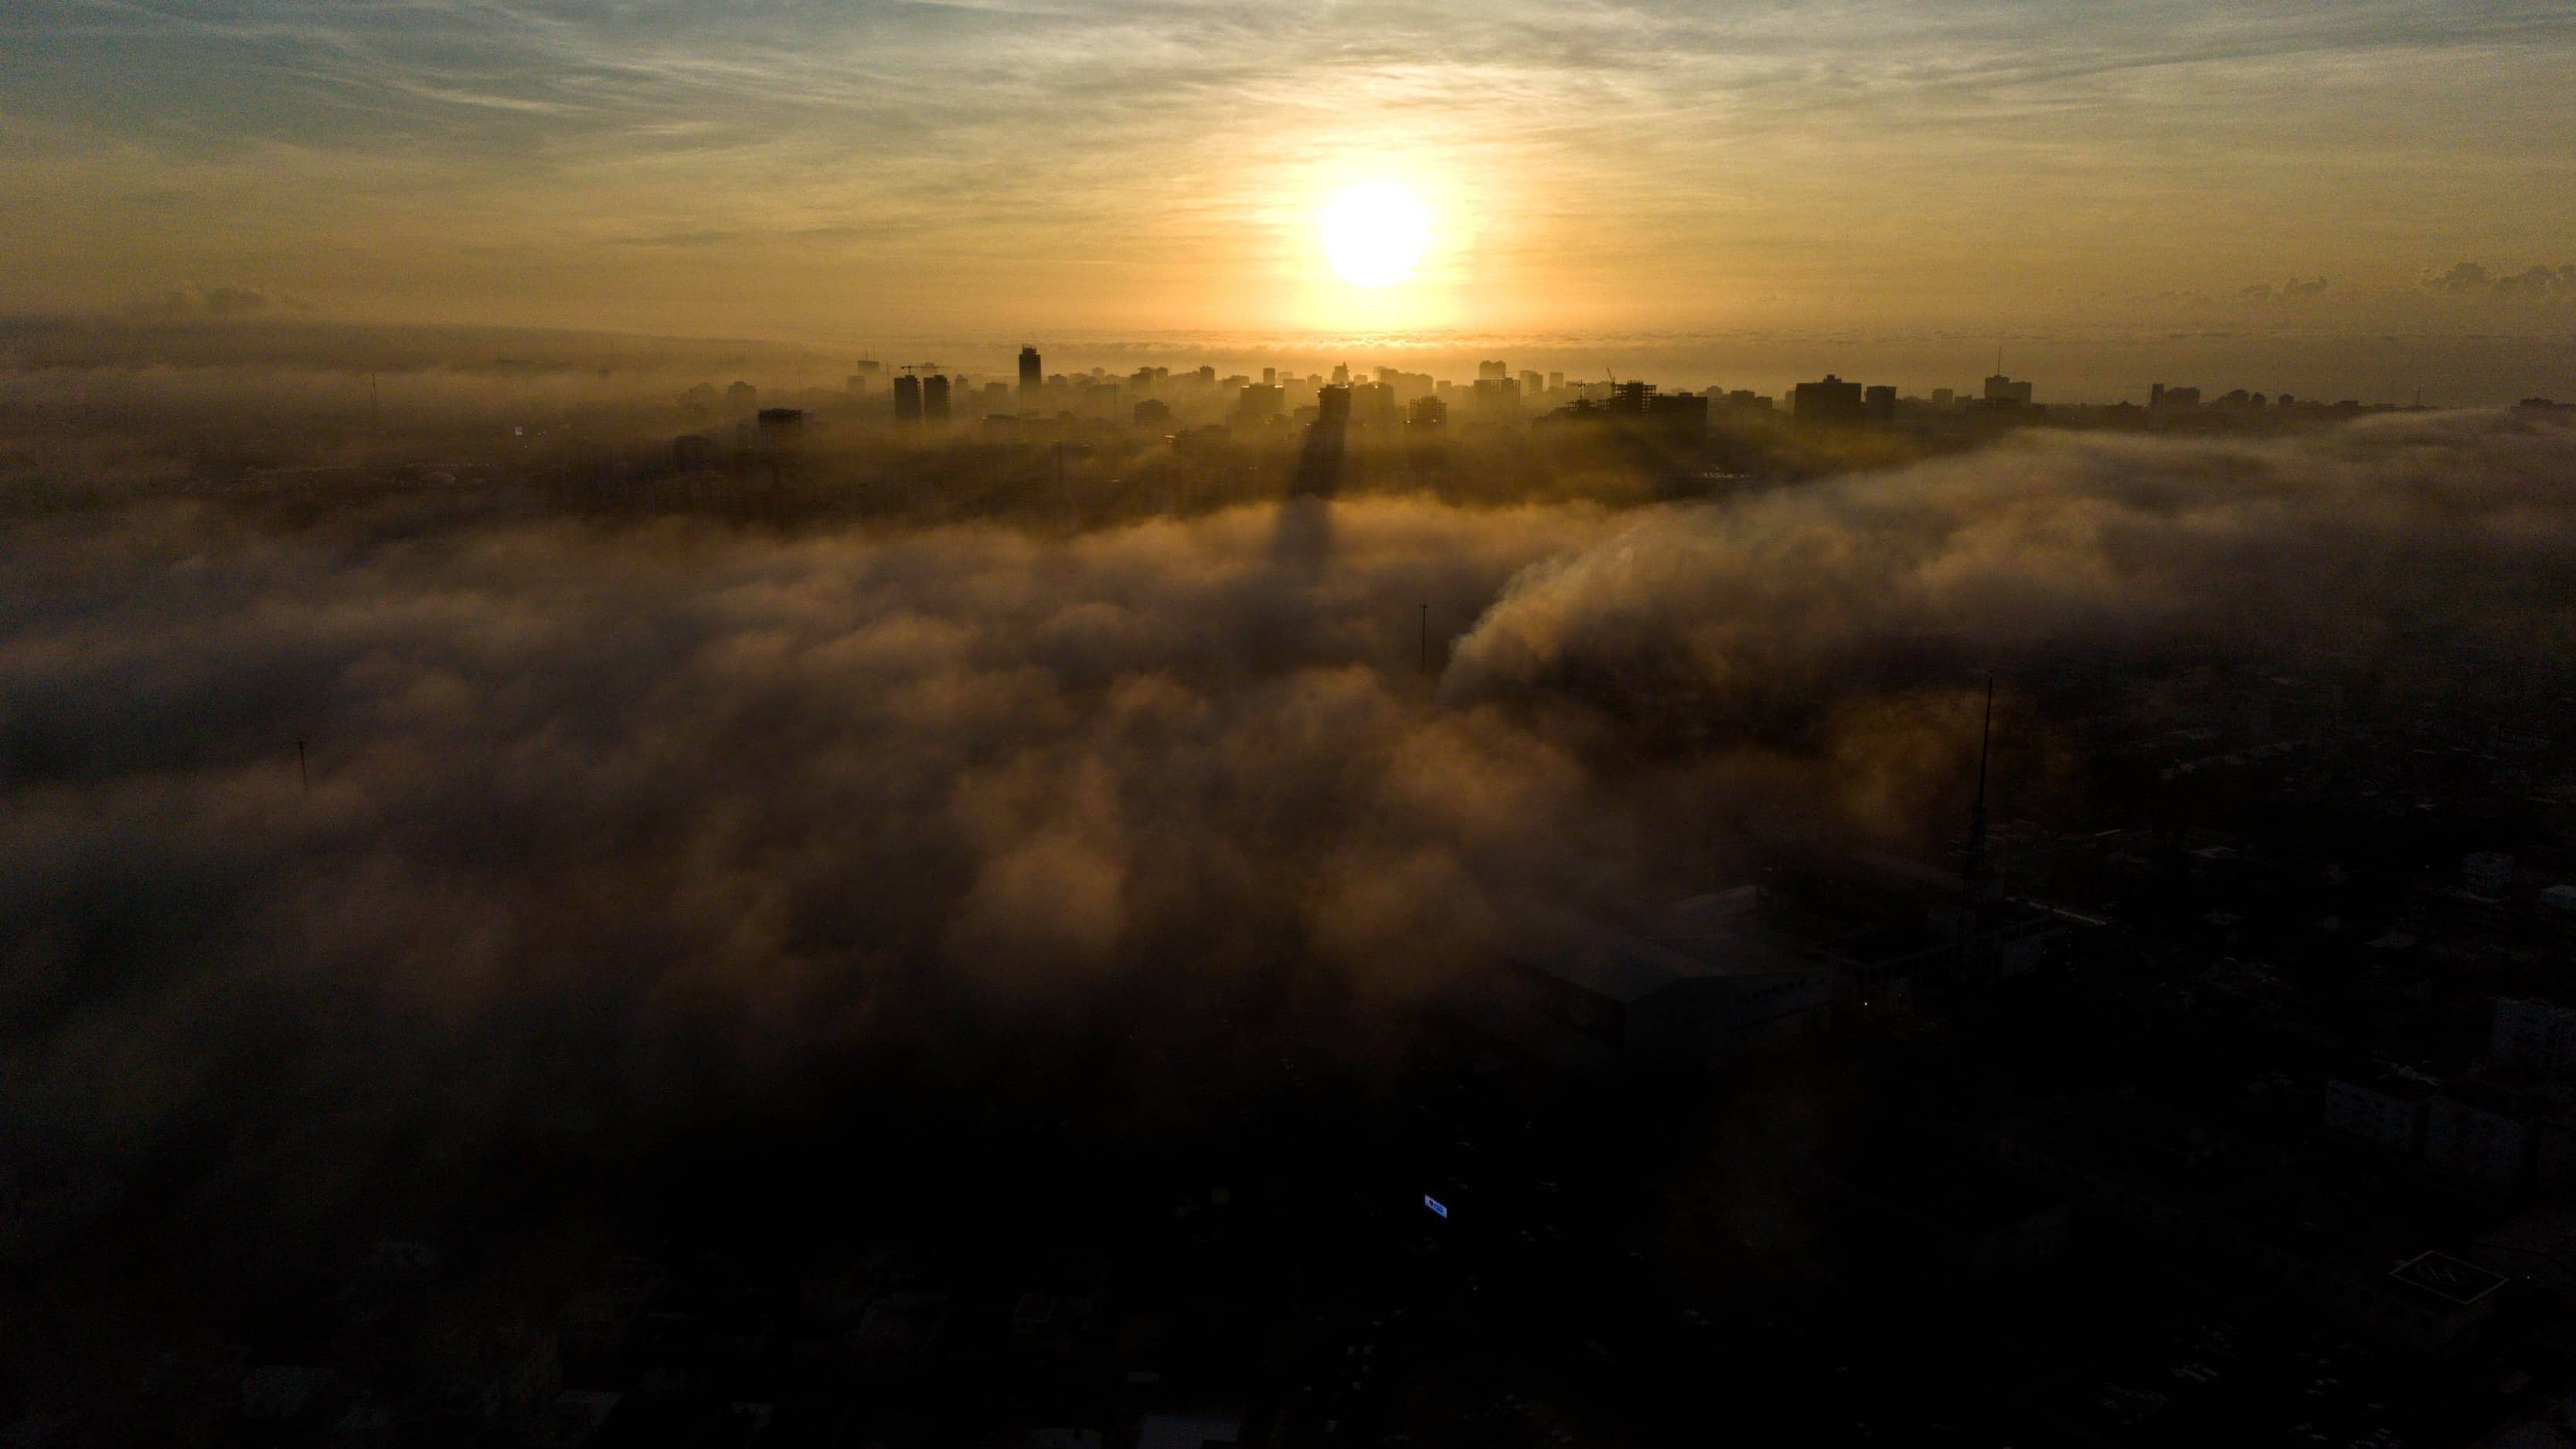 El perfil de la ciudad de Santo Domingo finamente dibujado por la niebla y la salida del sol.